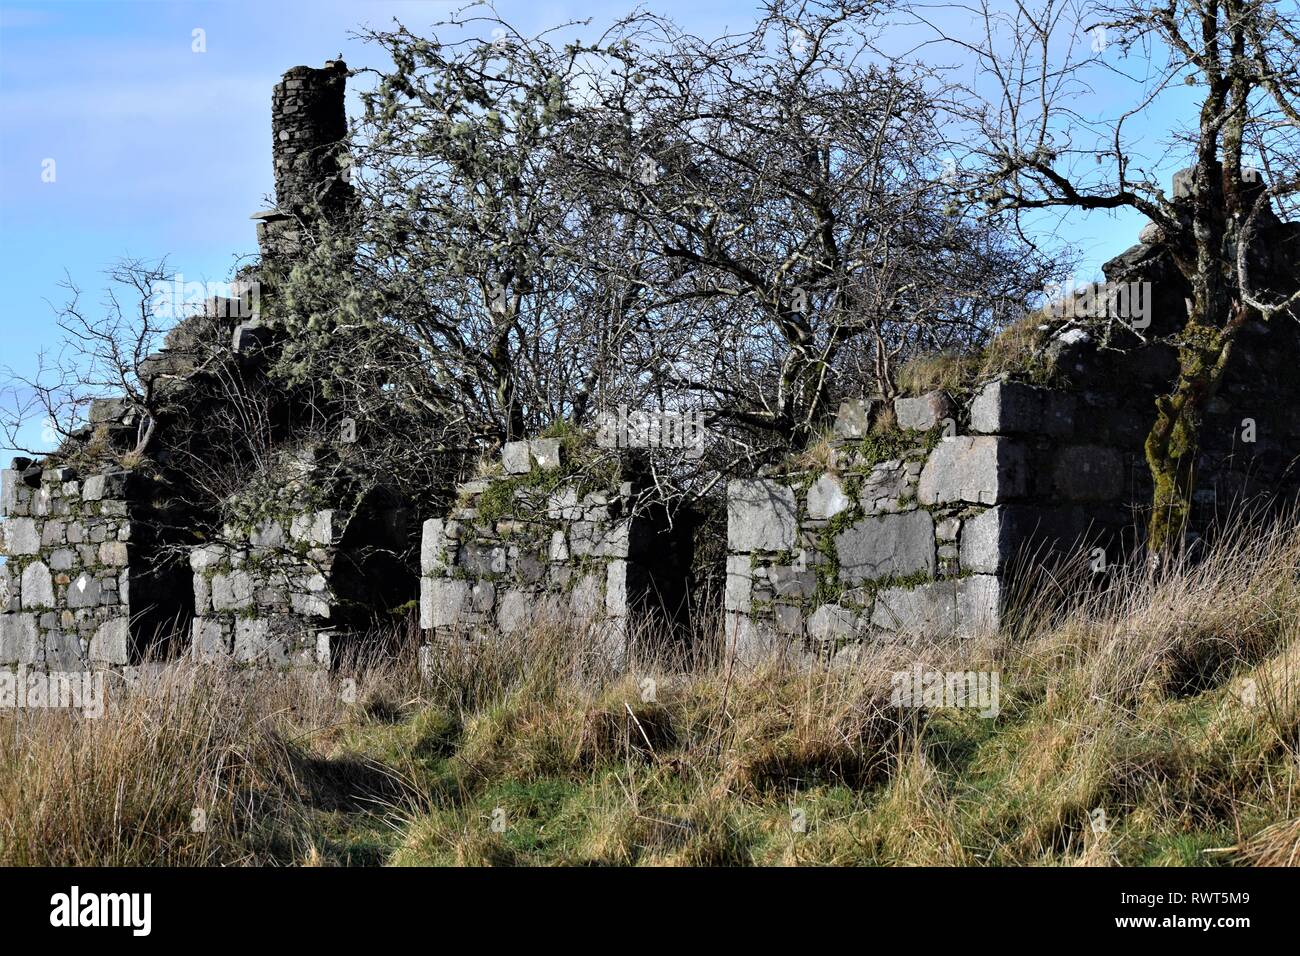 Croft House en ruine abandonnée remplie d'arbres d'aubépine. Gable end cheminée de pierre sèche de la construction. Banque D'Images